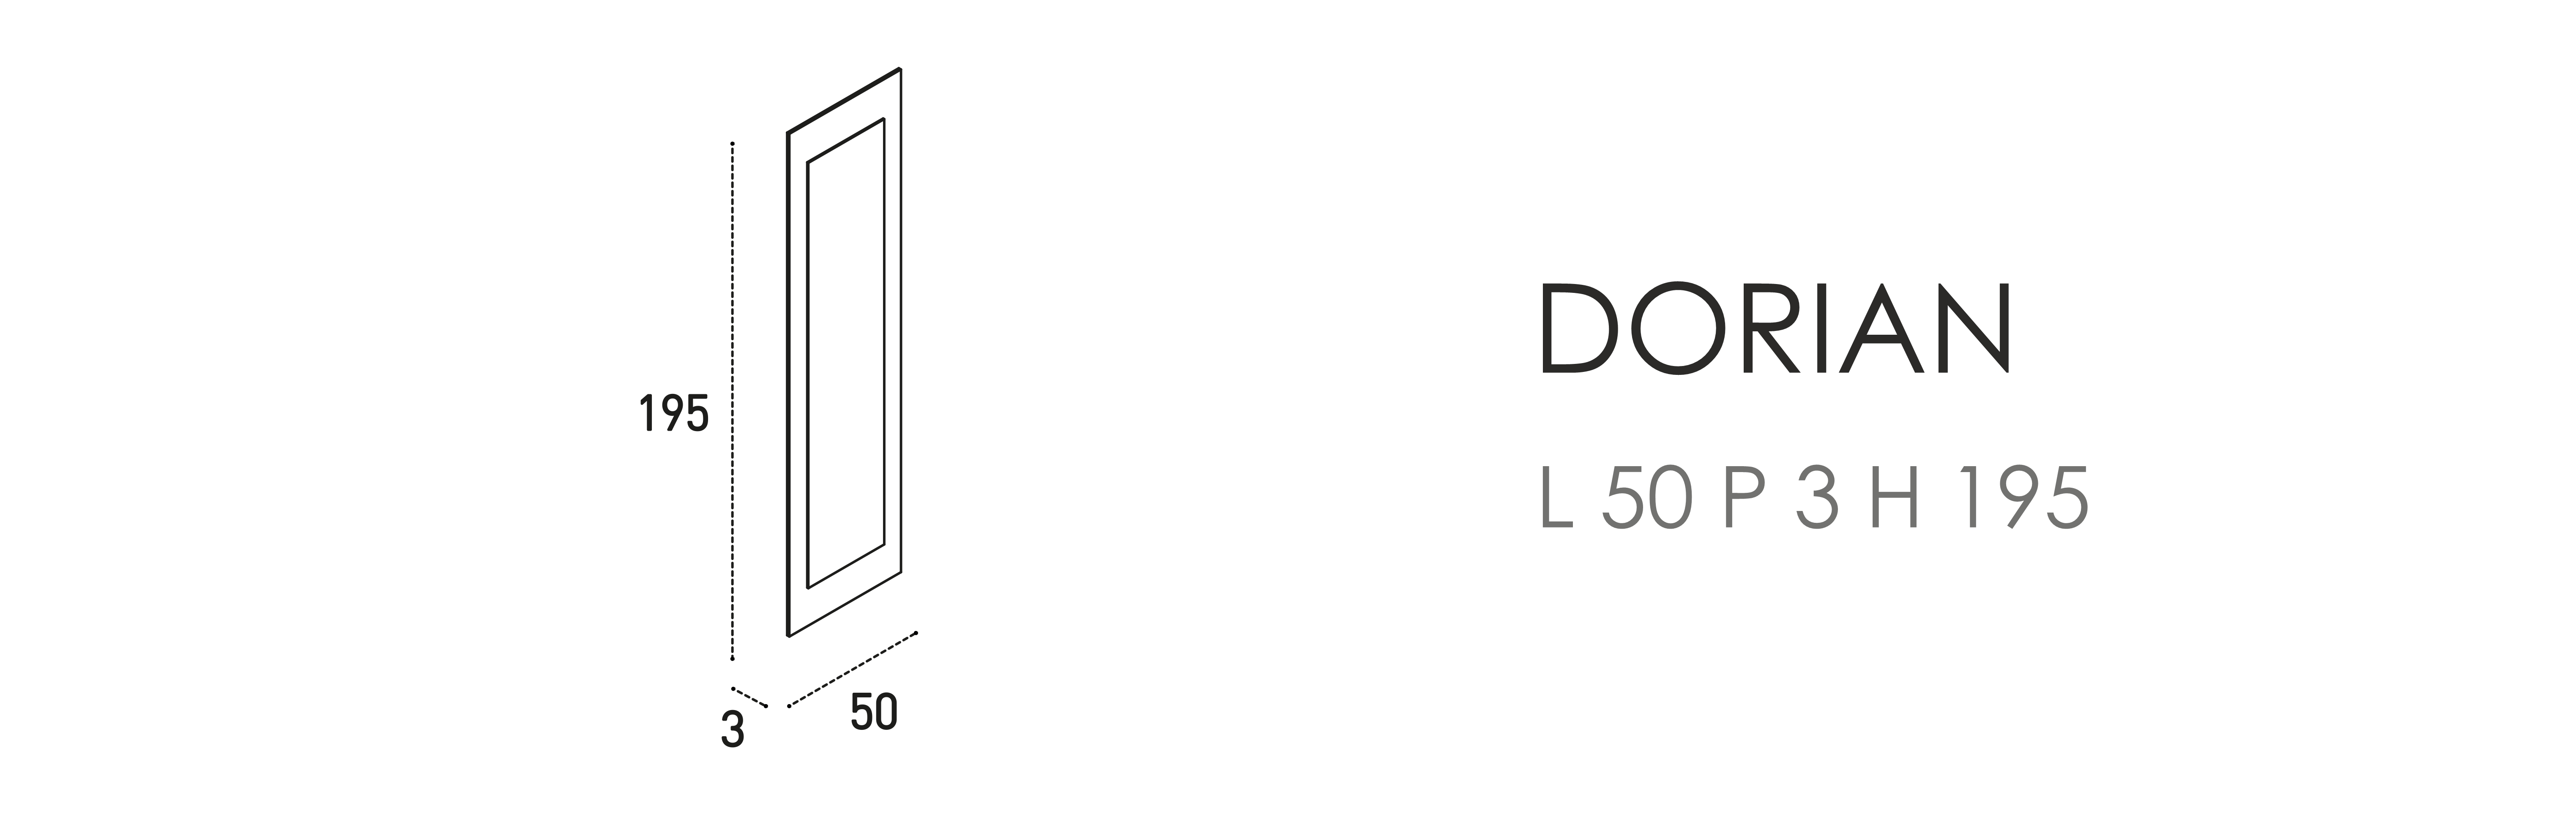 Dorian L 50 P 3 H 195